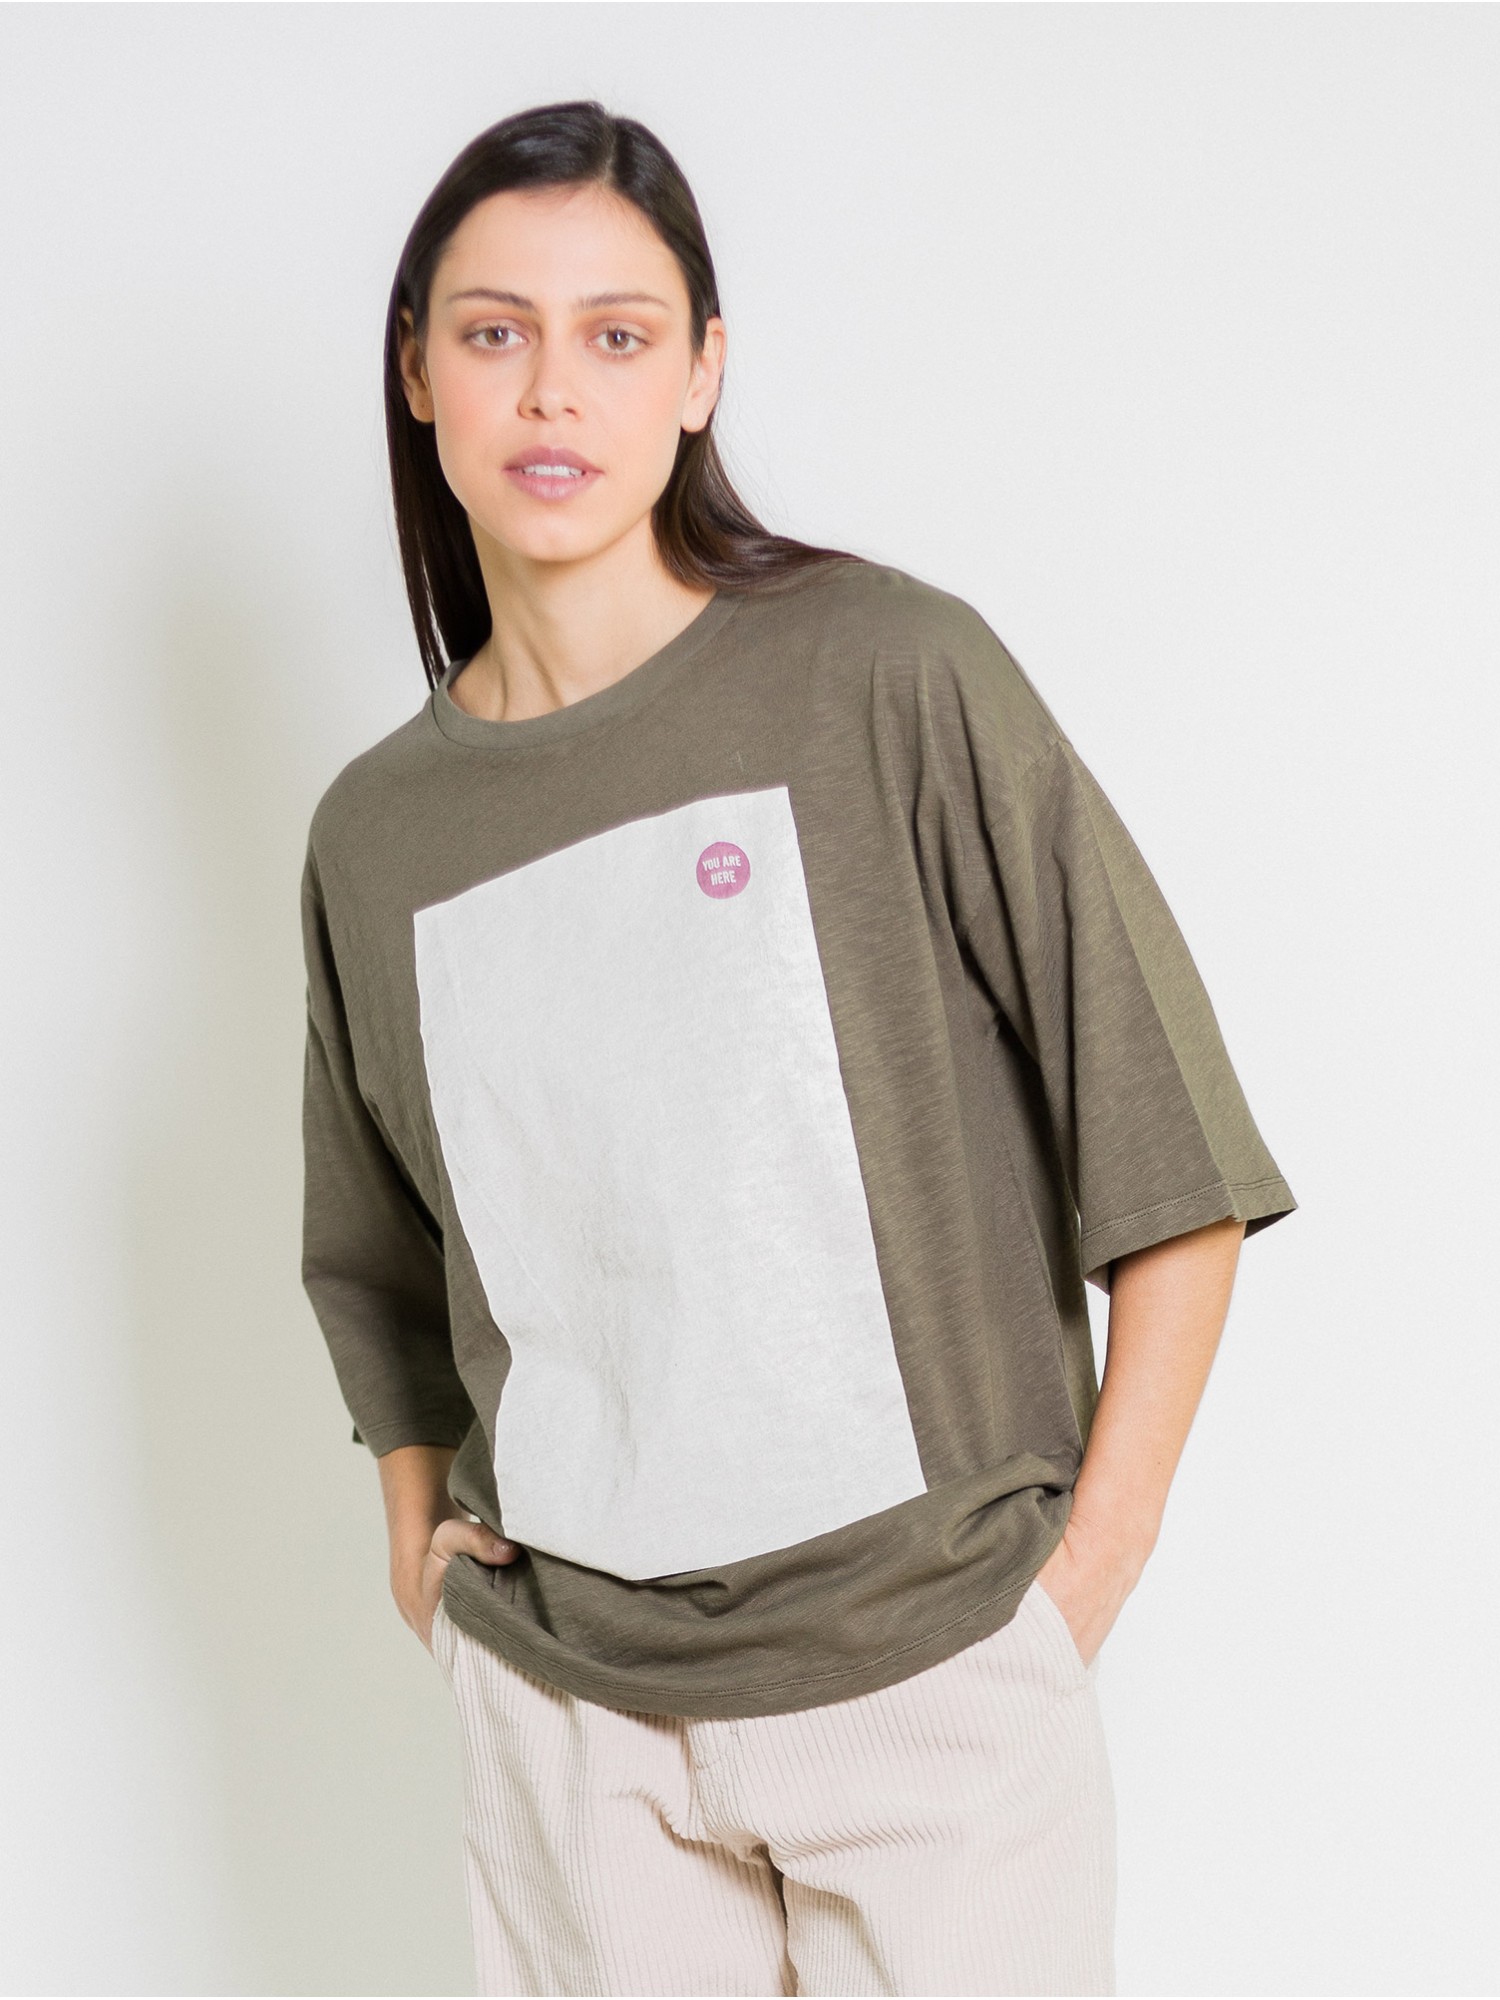 Camiseta larga Core PAN Producto Básico en shop candelascloset. Color verde en tejido 100% de algodón y estampado para mujer.